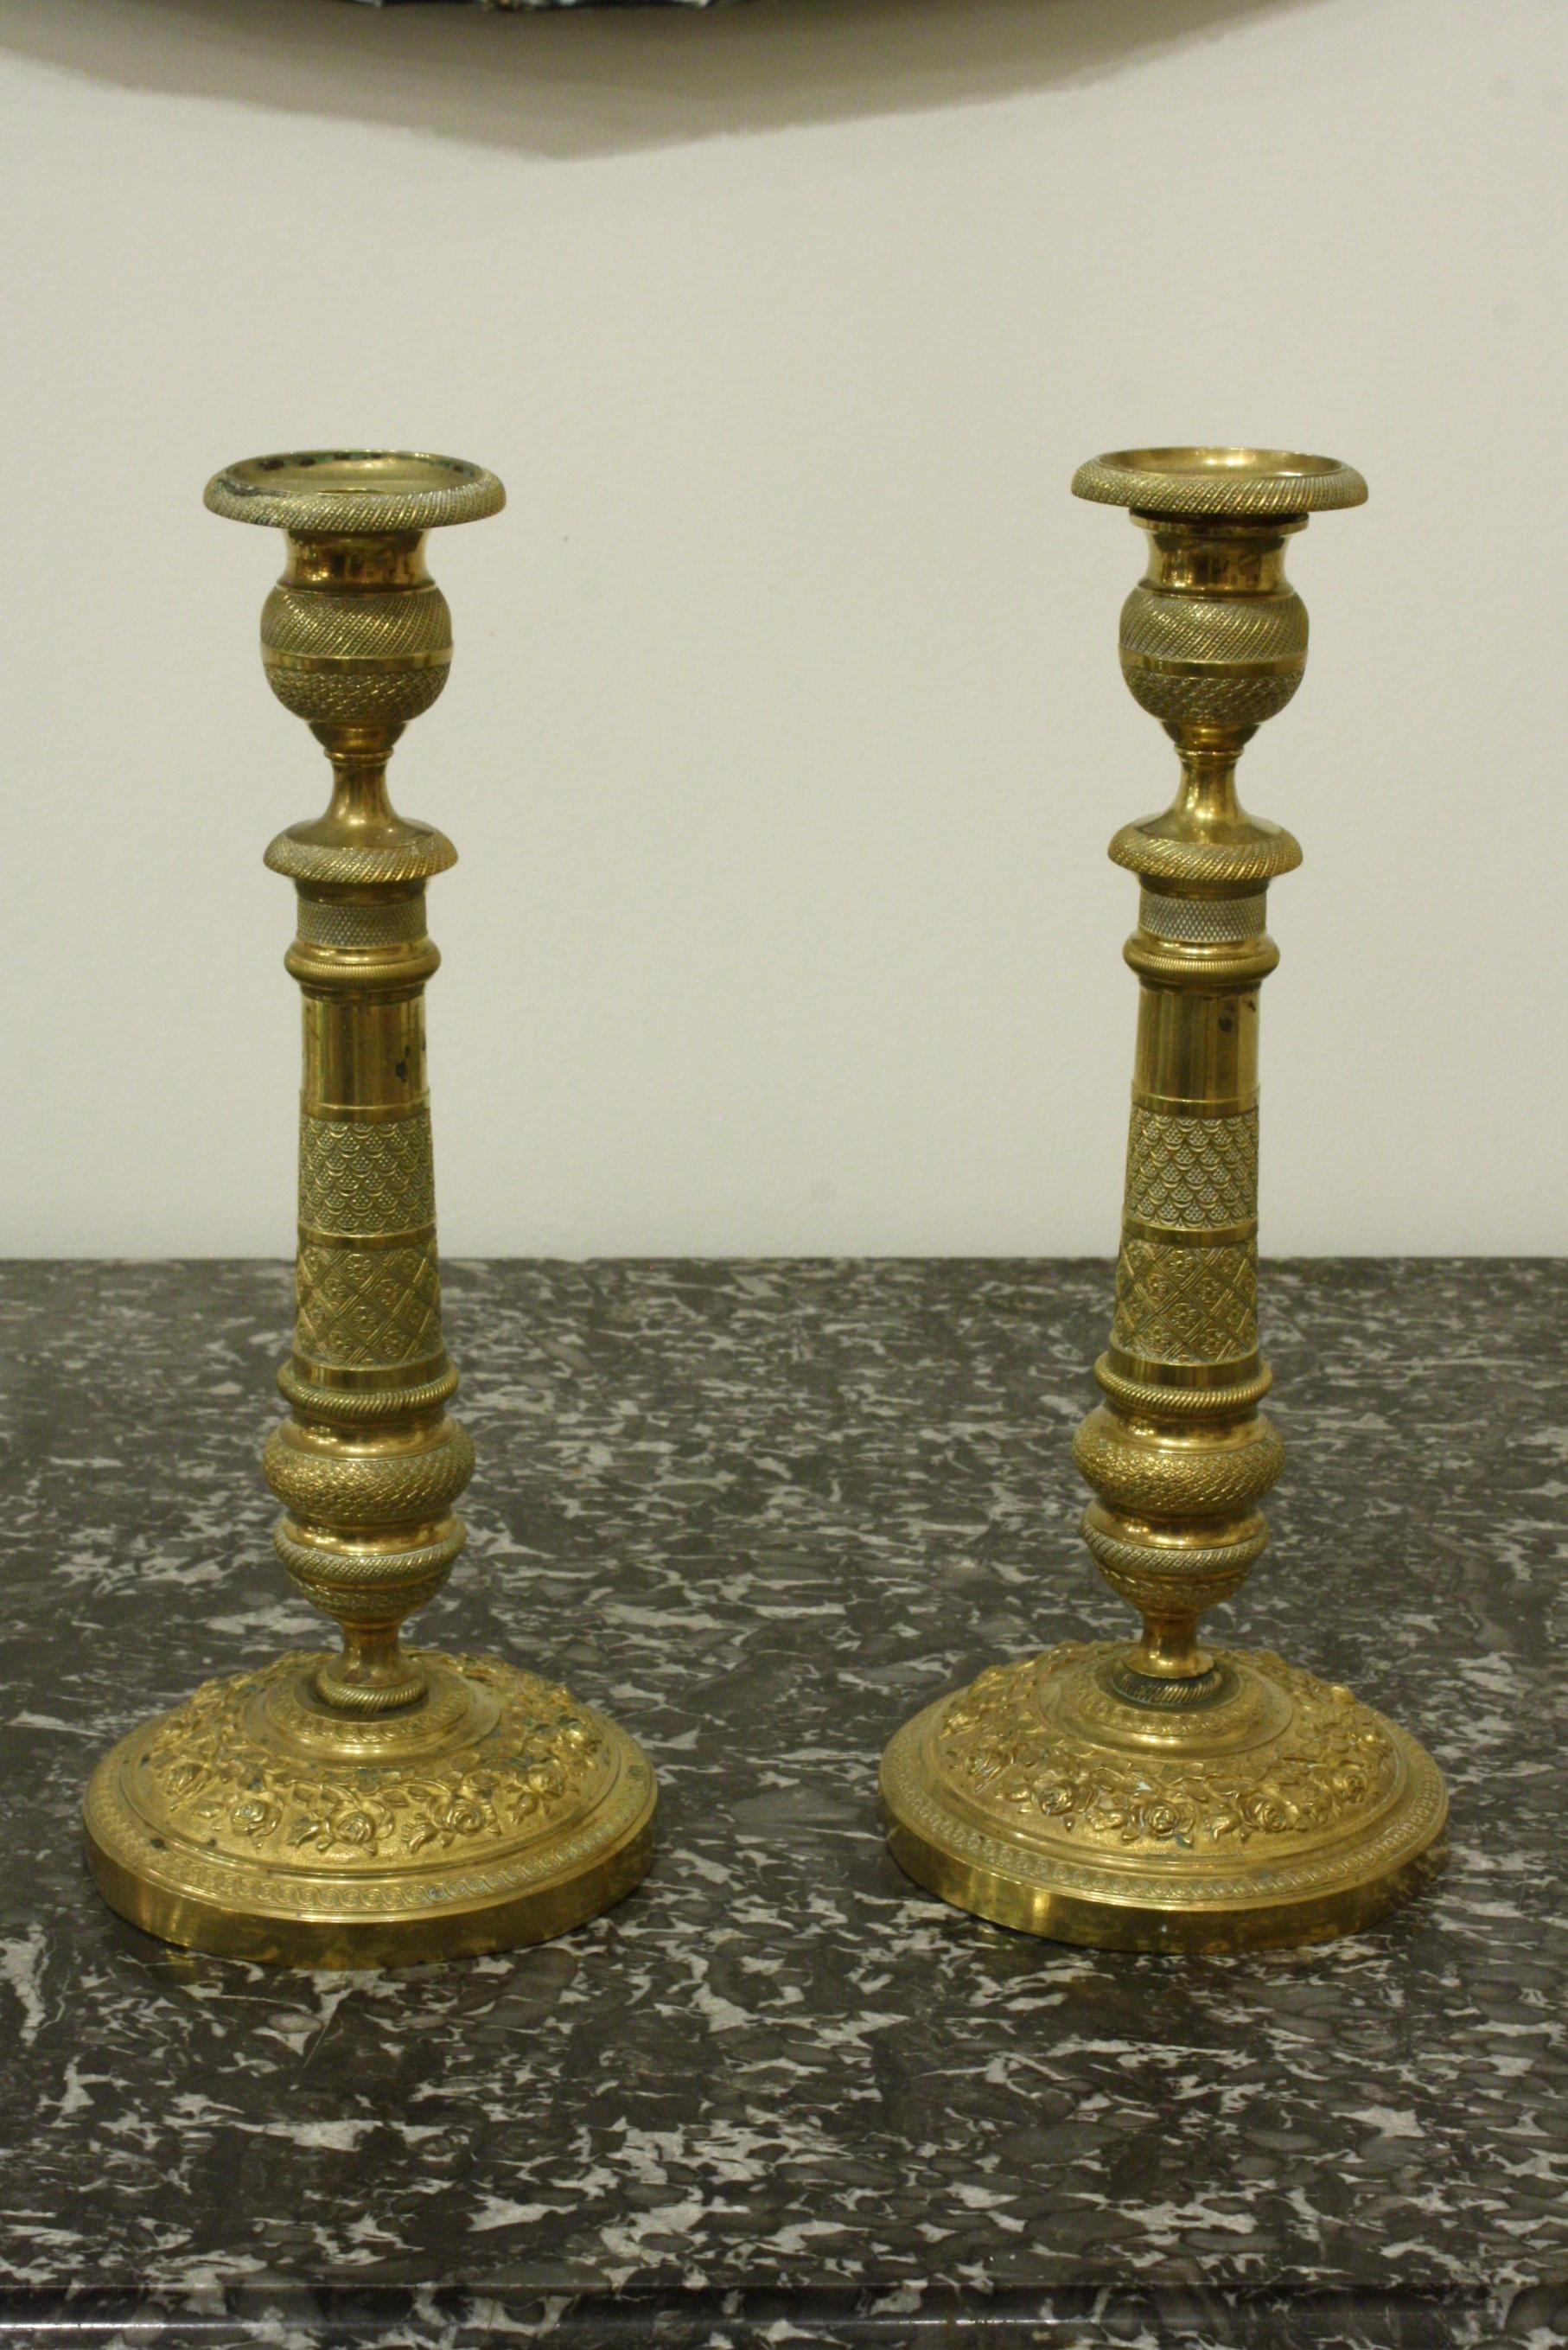 Une paire de chandeliers en laiton français très finement ciselés, vers 1870 dans le style néoclassique (pouvant être électrifiés comme lampes de table).  Les bases sont décorées de vignes de roses.